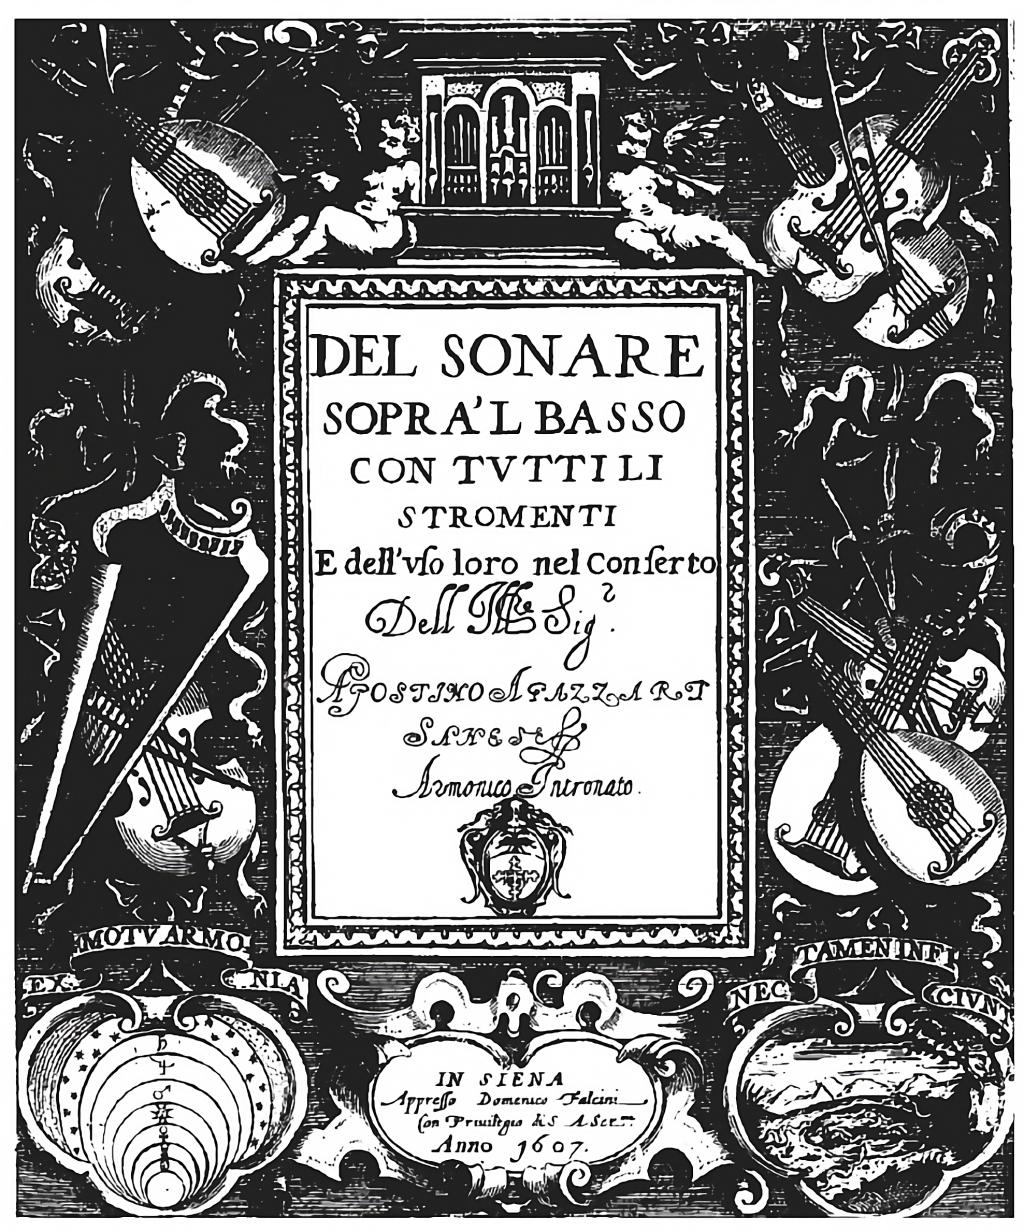 Agostino Agazzaris værk er en af de tidligste afhandlinger om generalbasspil, udgivet i Siena 1607.